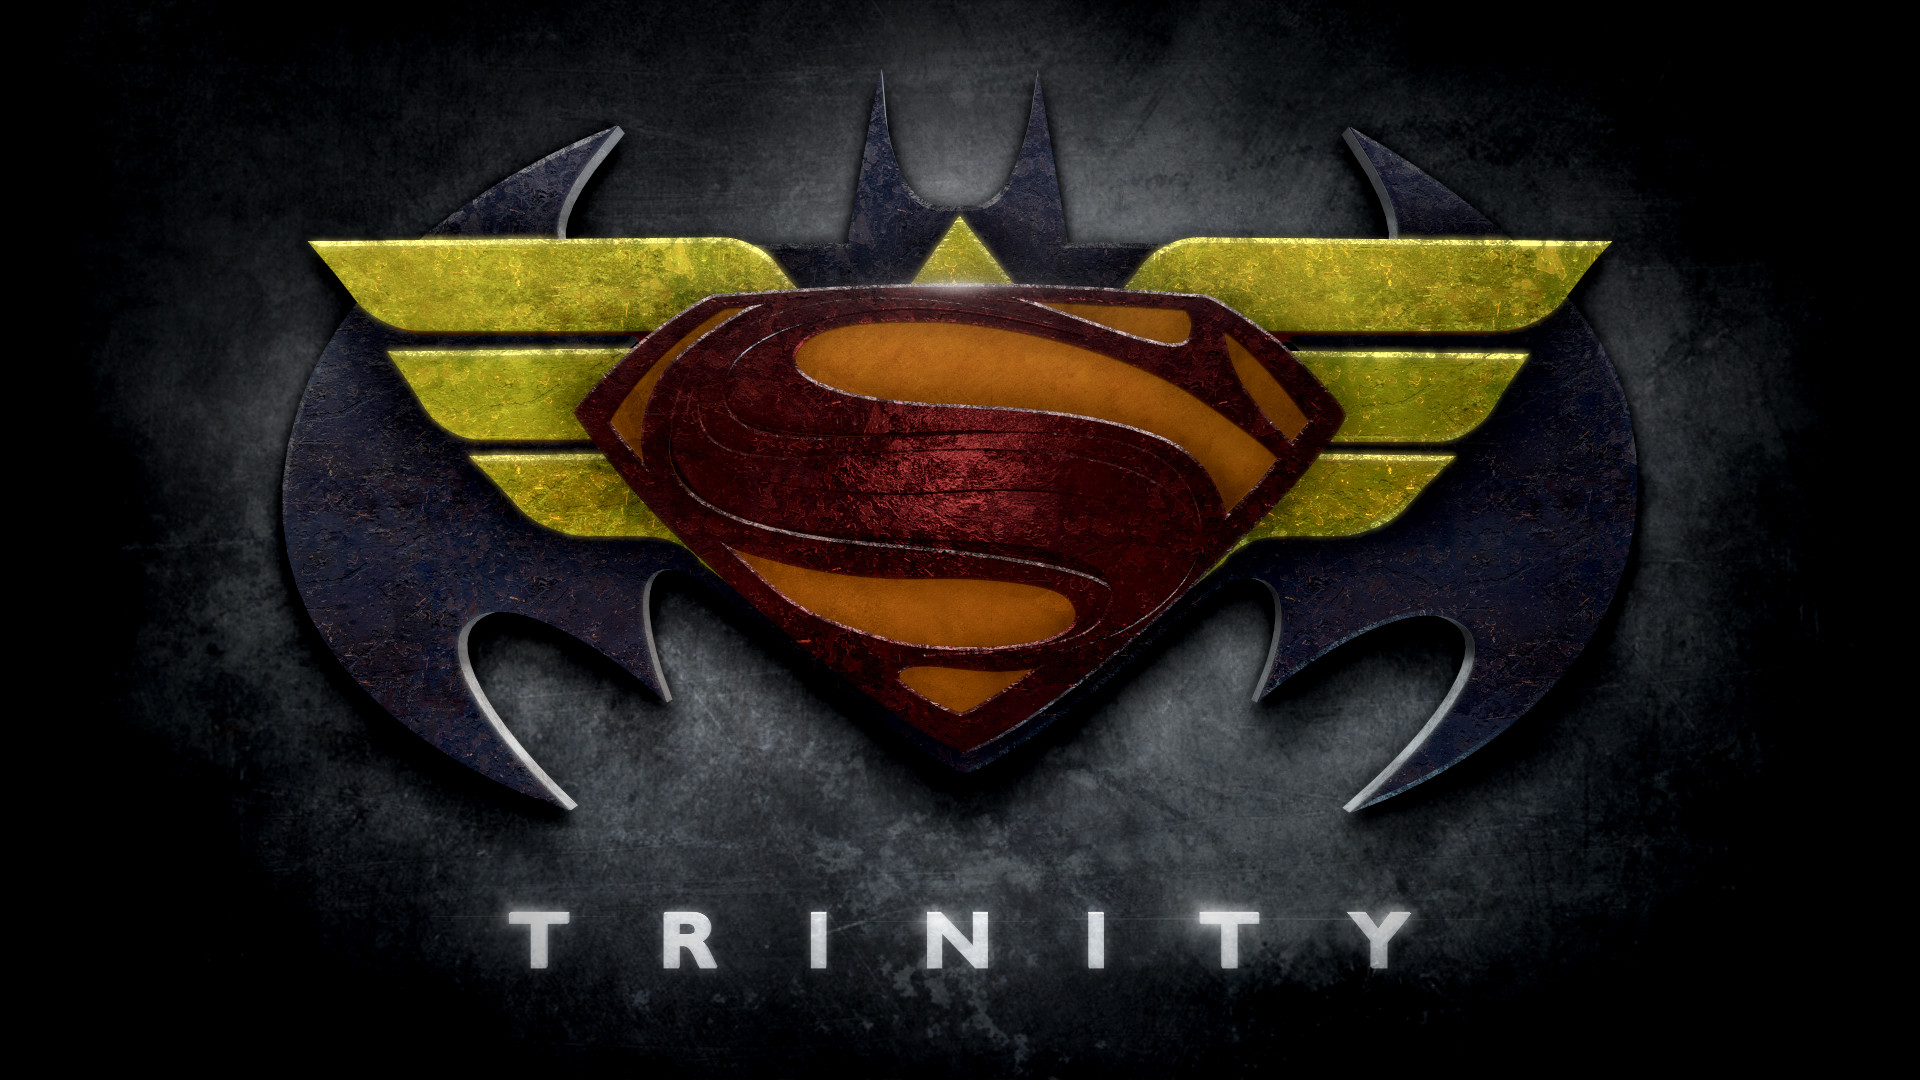 Wonder Woman Trinity stylized logo people